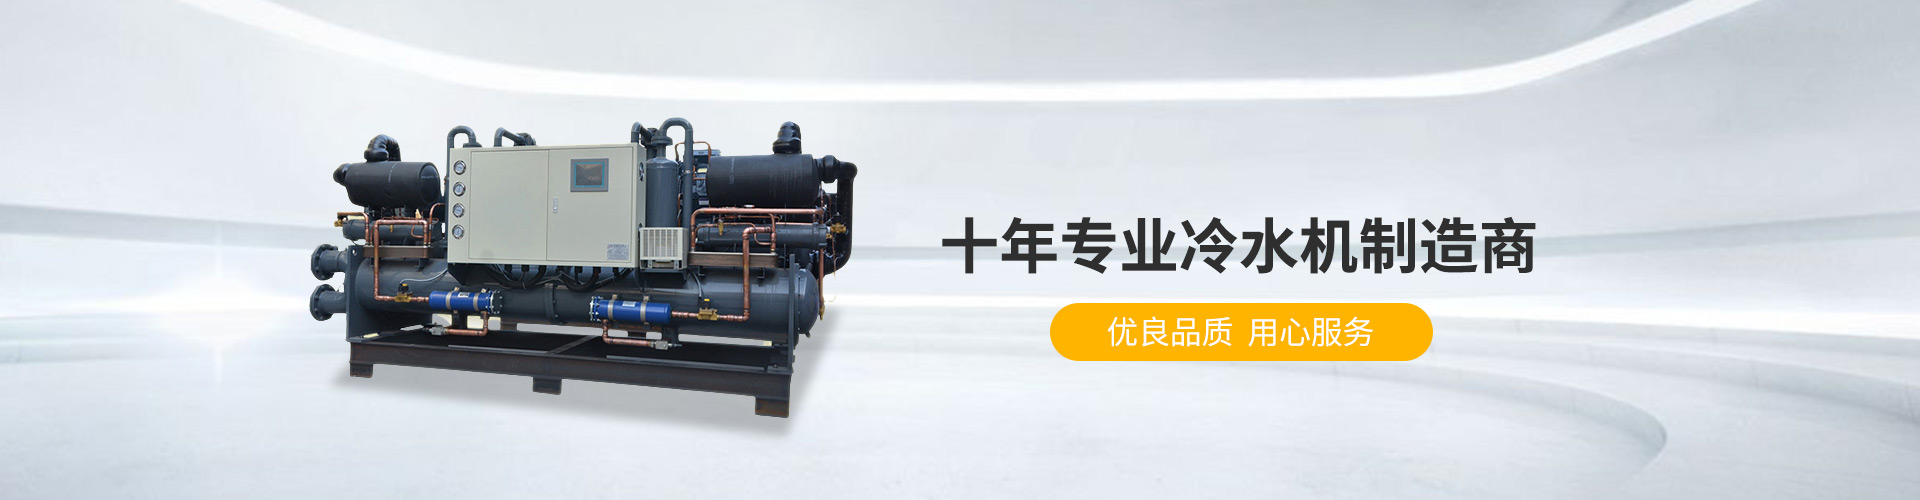 杭州风冷式冷冻机生产